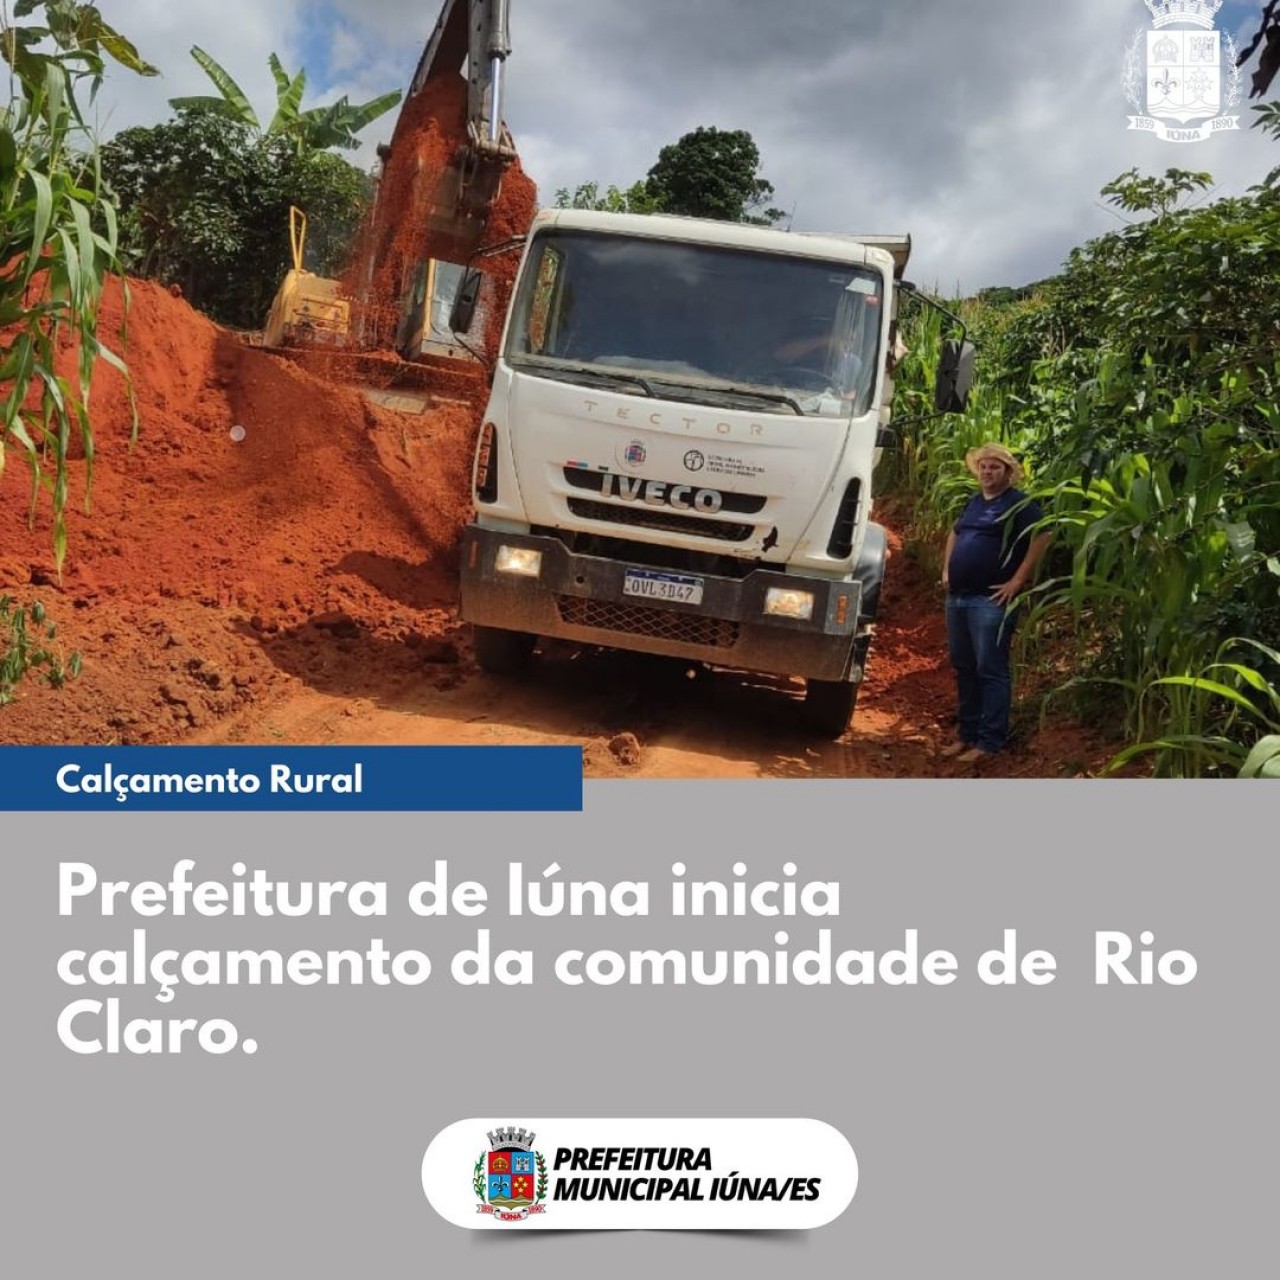 OBRA 84 - região de Rio Claro recebe calçamento rural